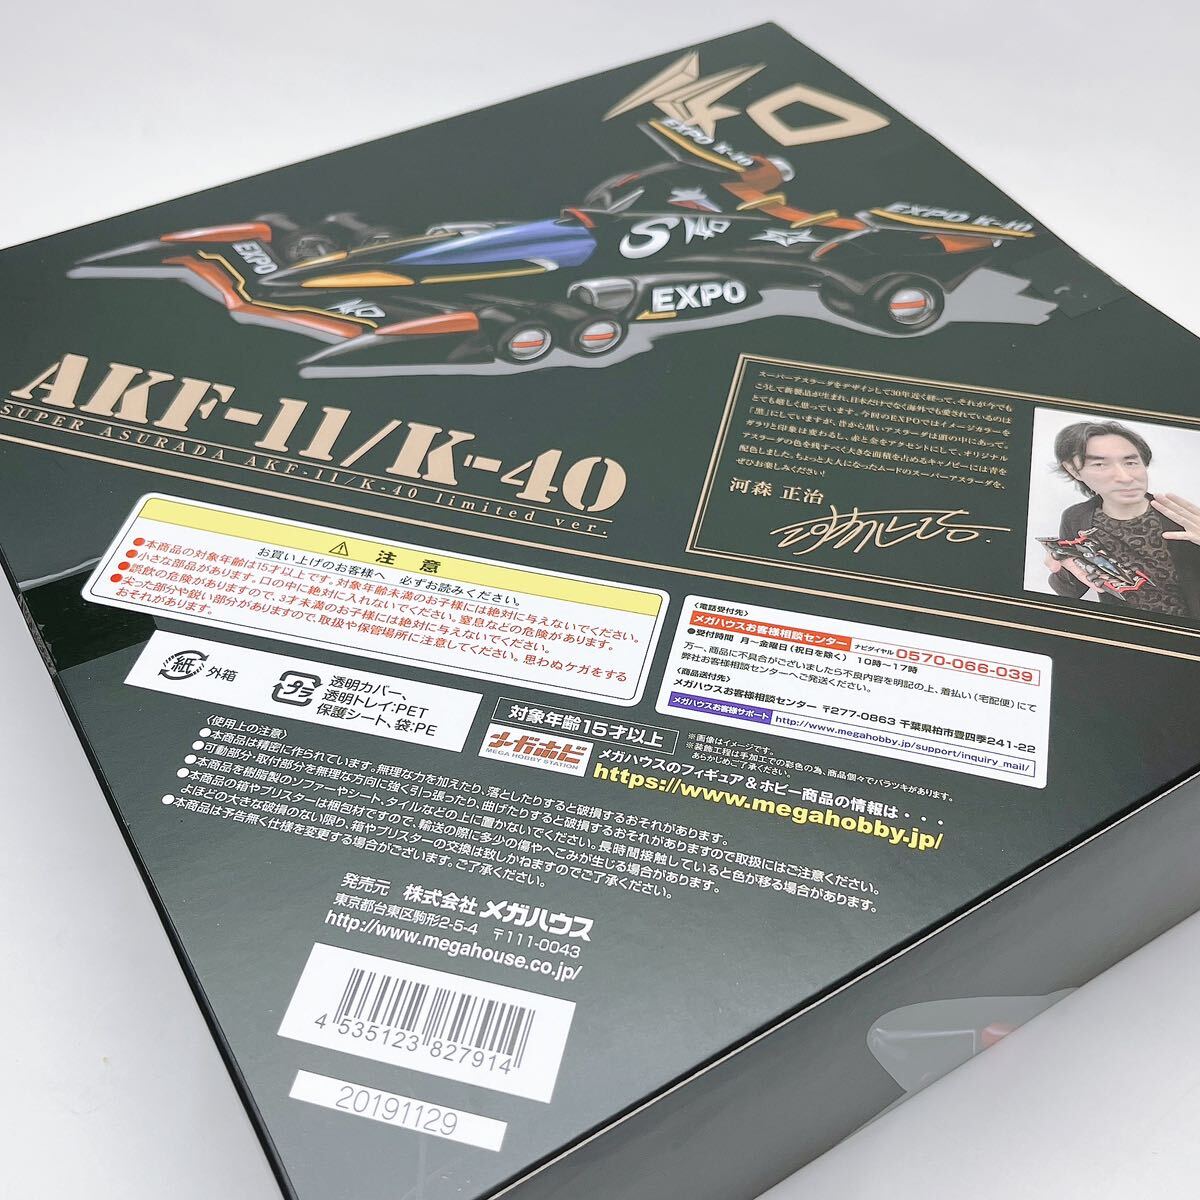 【S2】未開封 ヴァリアブルアクション スーパーアスラーダ AKF-11/K-40 limited ver. 「新世紀GPXサイバーフォーミュラ11」の画像4